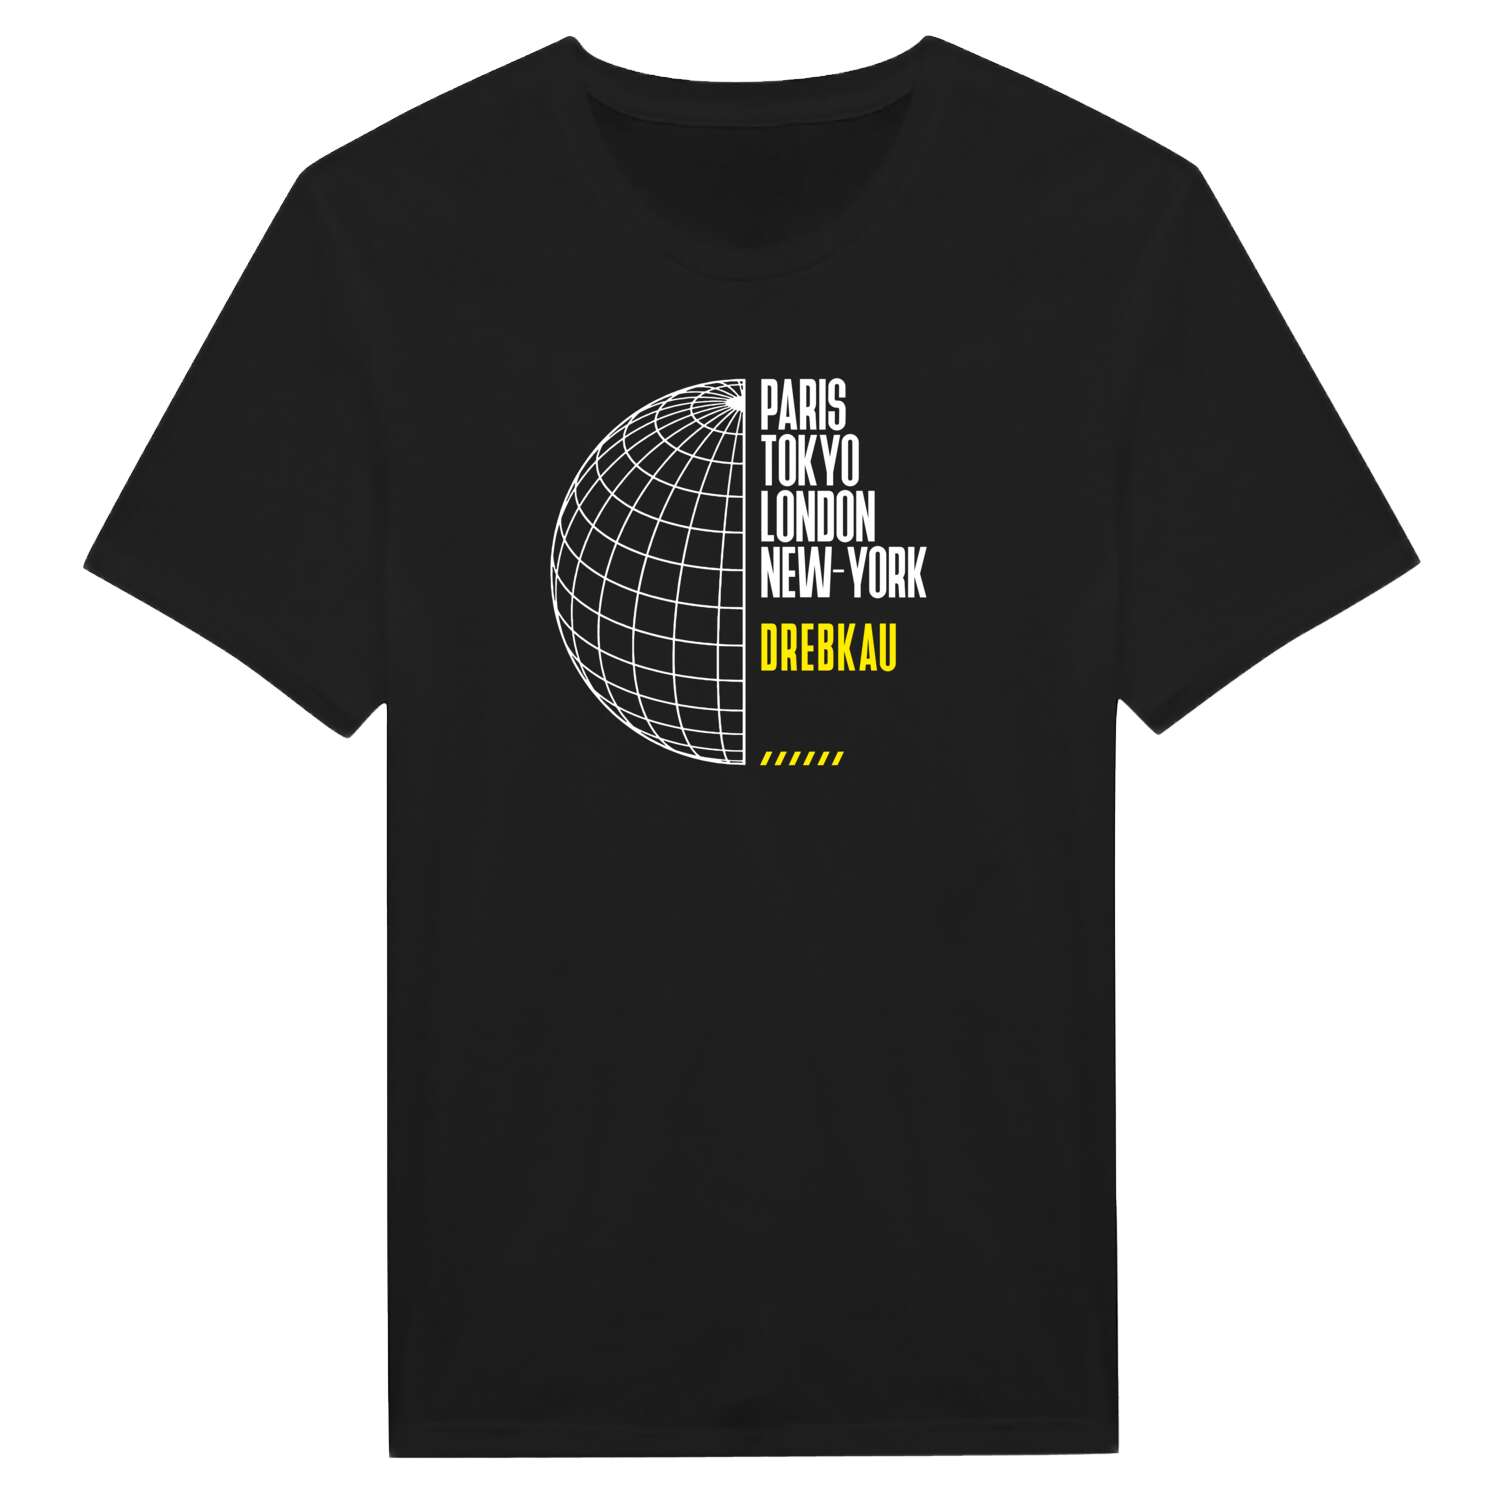 Drebkau T-Shirt »Paris Tokyo London«